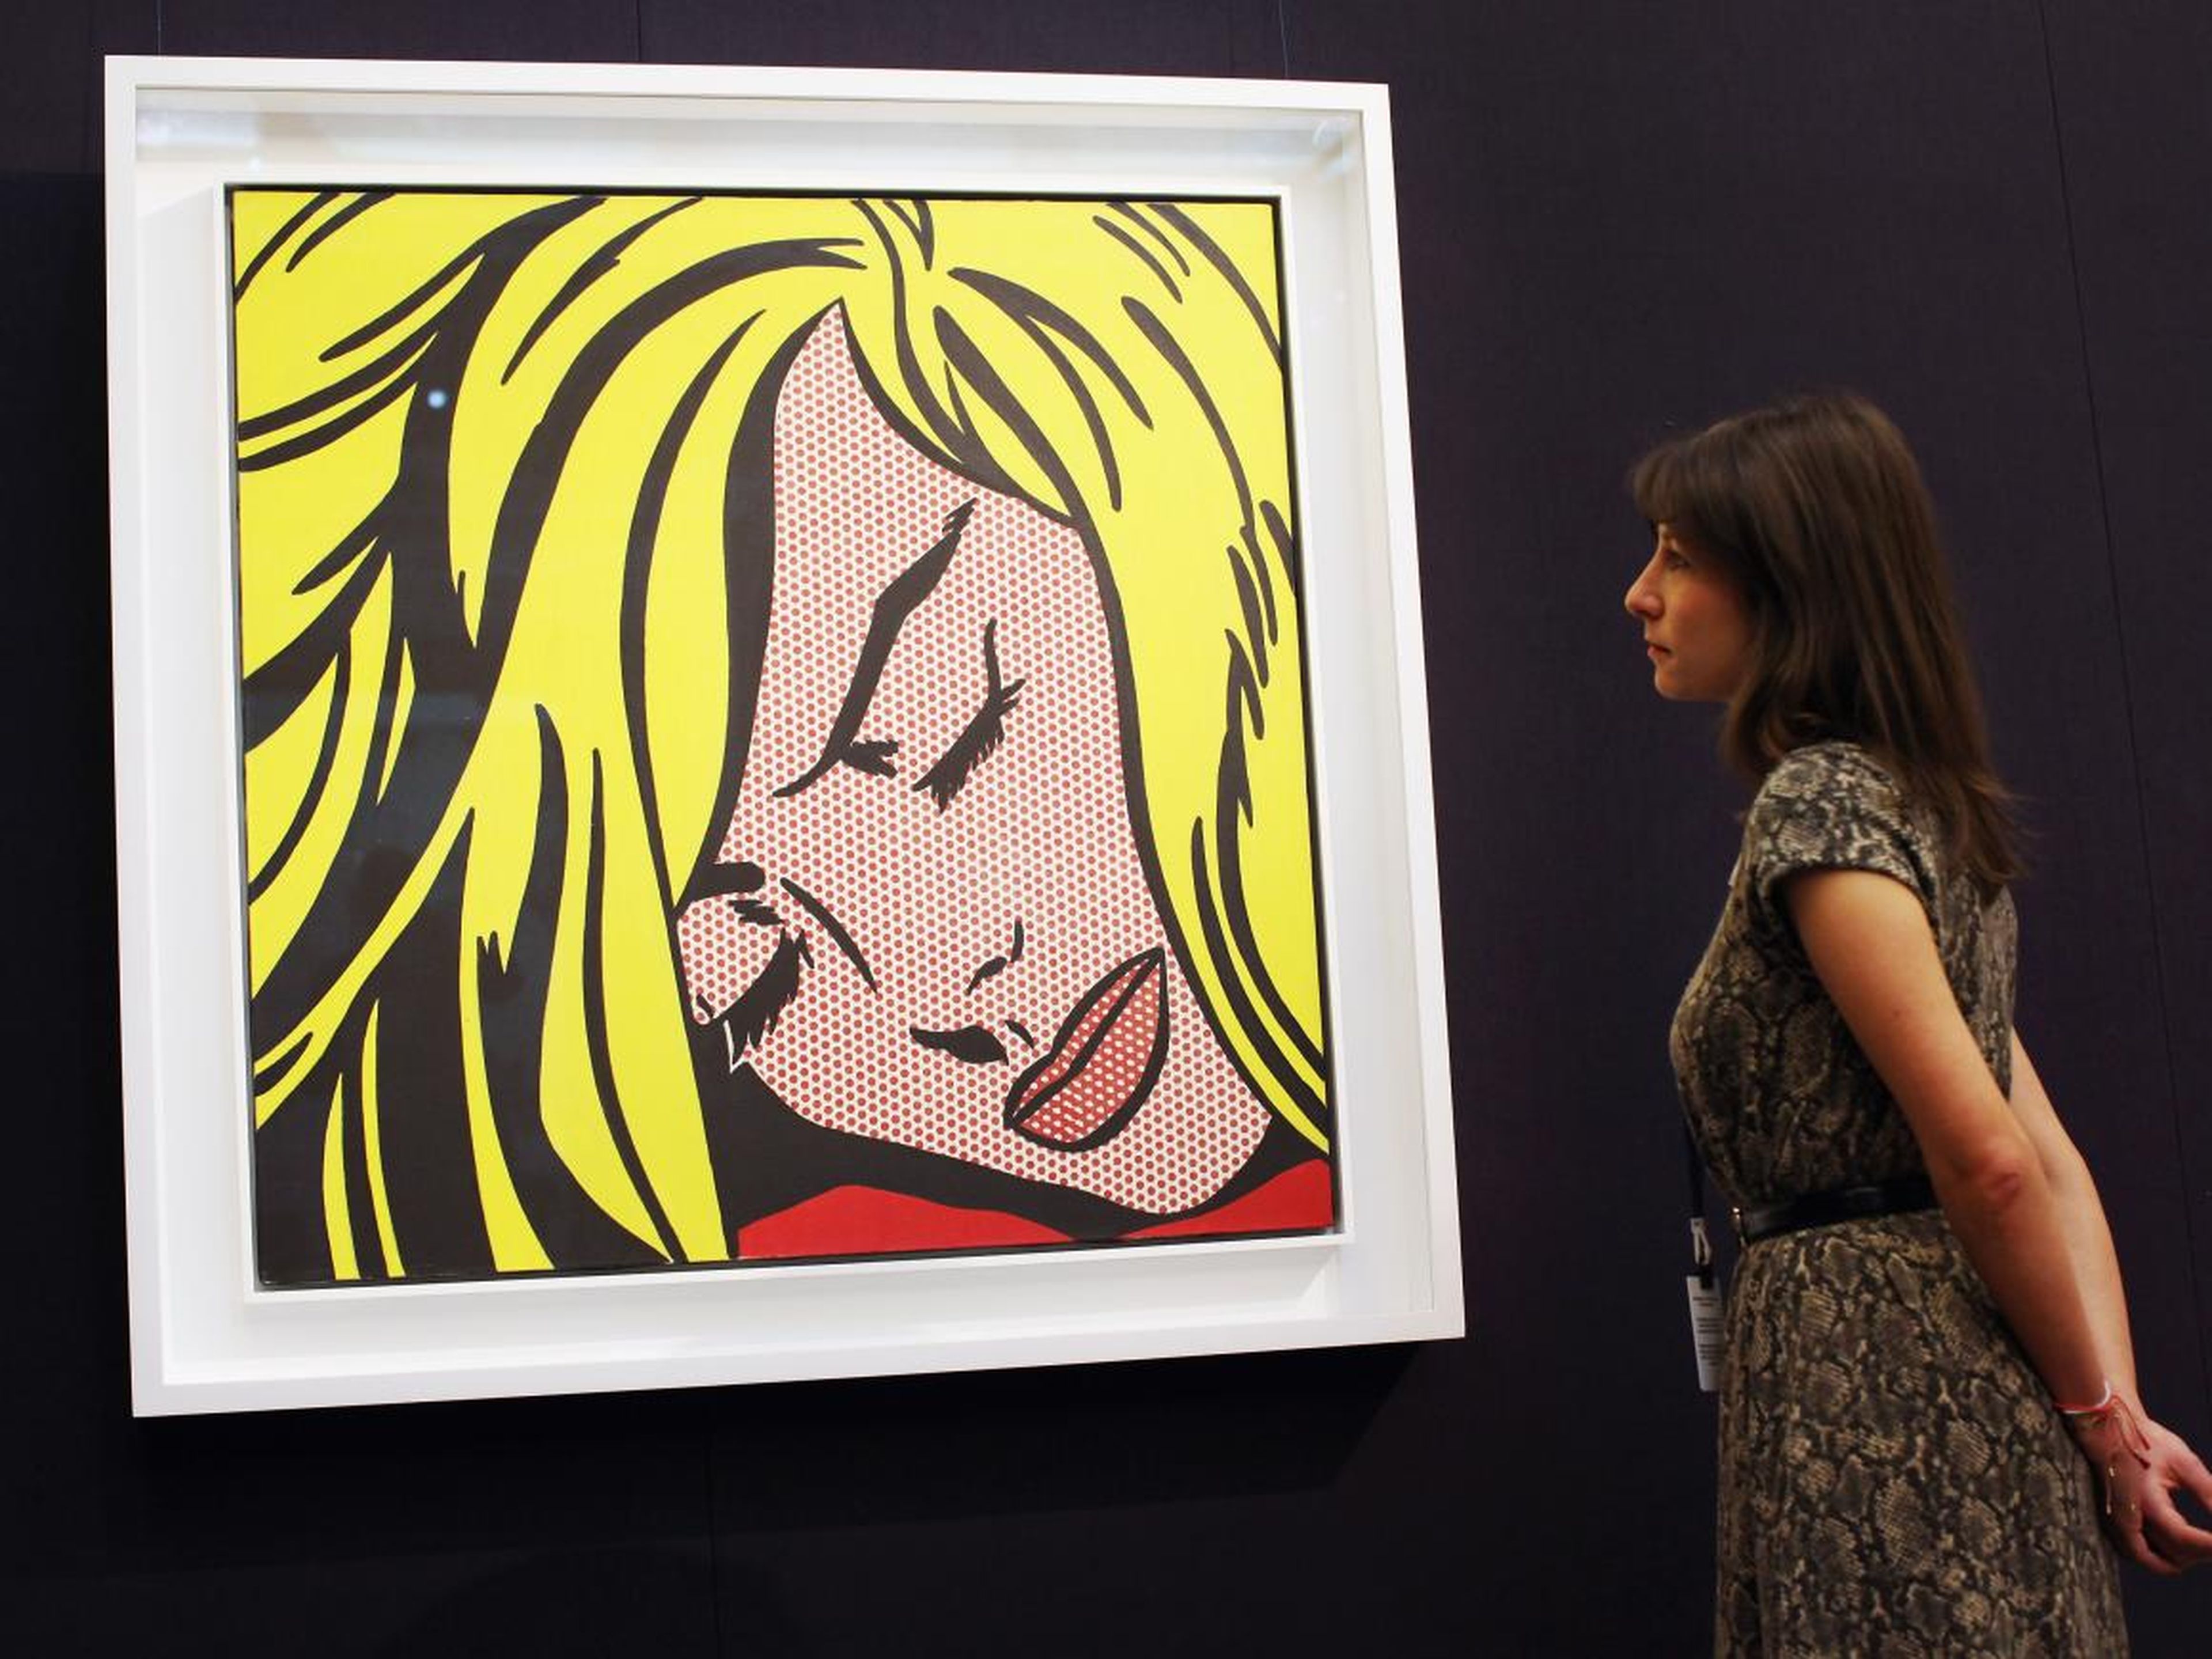 El artista Roy Lichtenstein era conocido por sus coloridas pinturas.